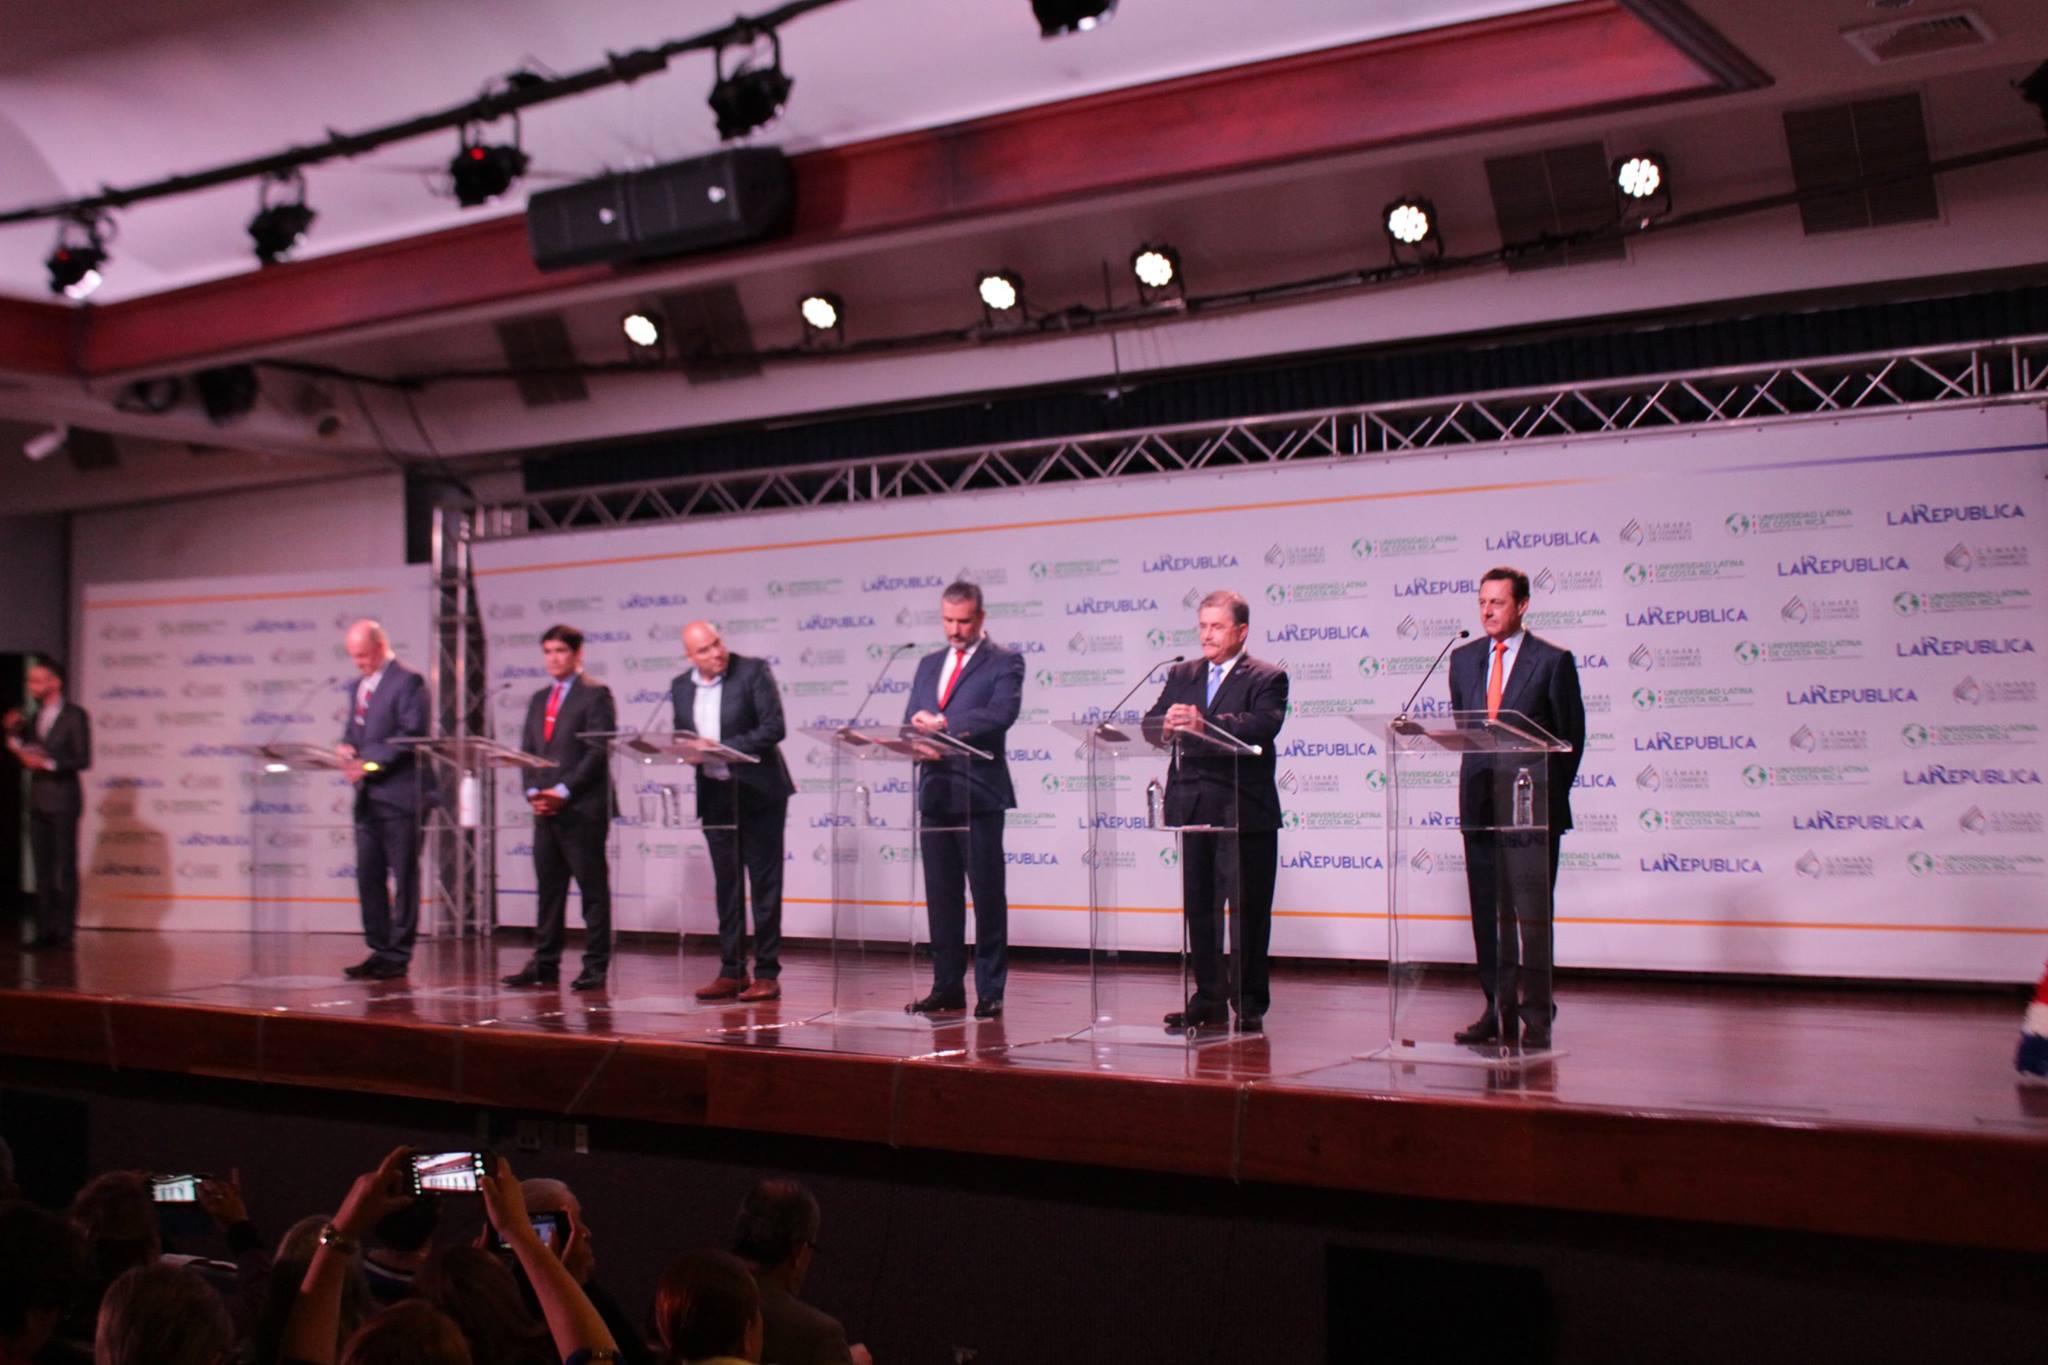 Infraestructura y políticas carcelarias atizaron debate entre candidatos presidenciales